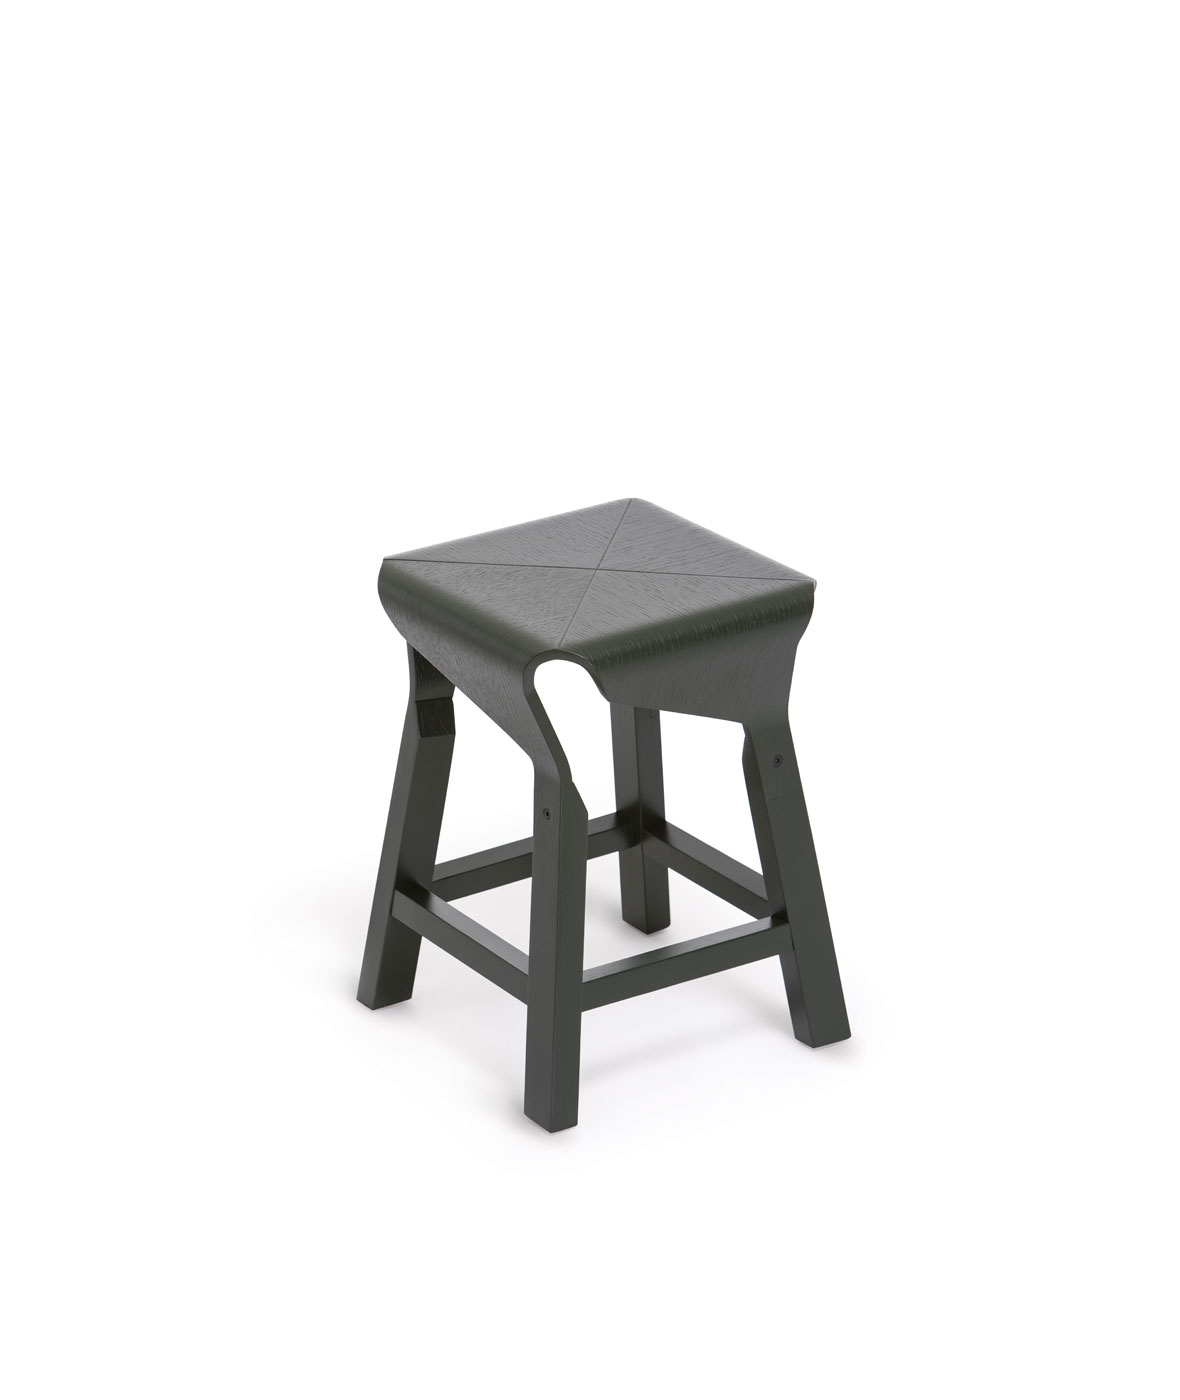 Naoshima low stool - Vergés